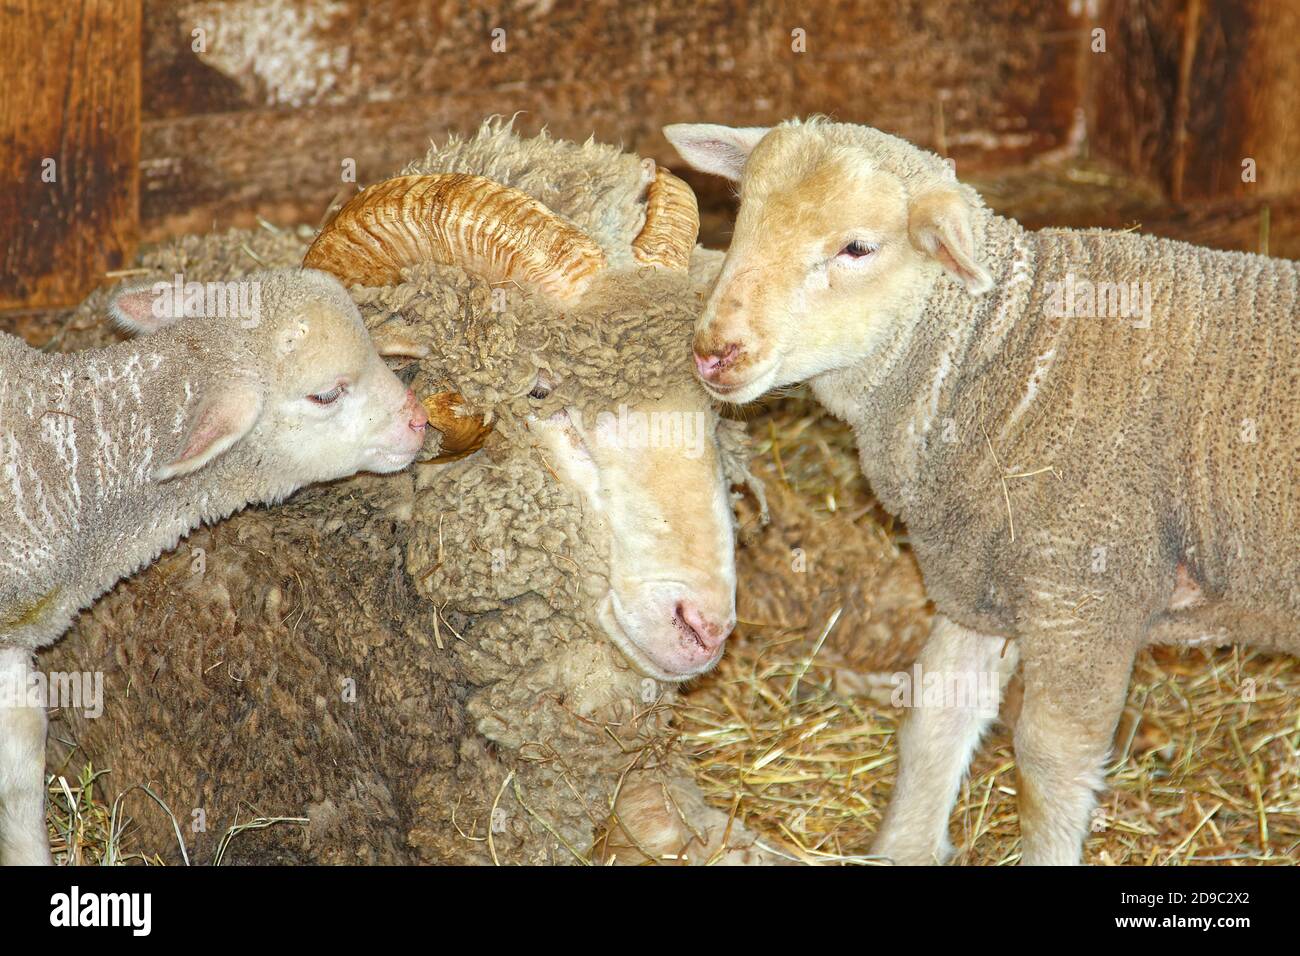 Zwei Lämmer nuzzling Widder, gebogene Hörner, Schafe, dicke Wolle Mantel, Heustränge, Scheune, Nutztiere, niedlich, Frühling Stockfoto